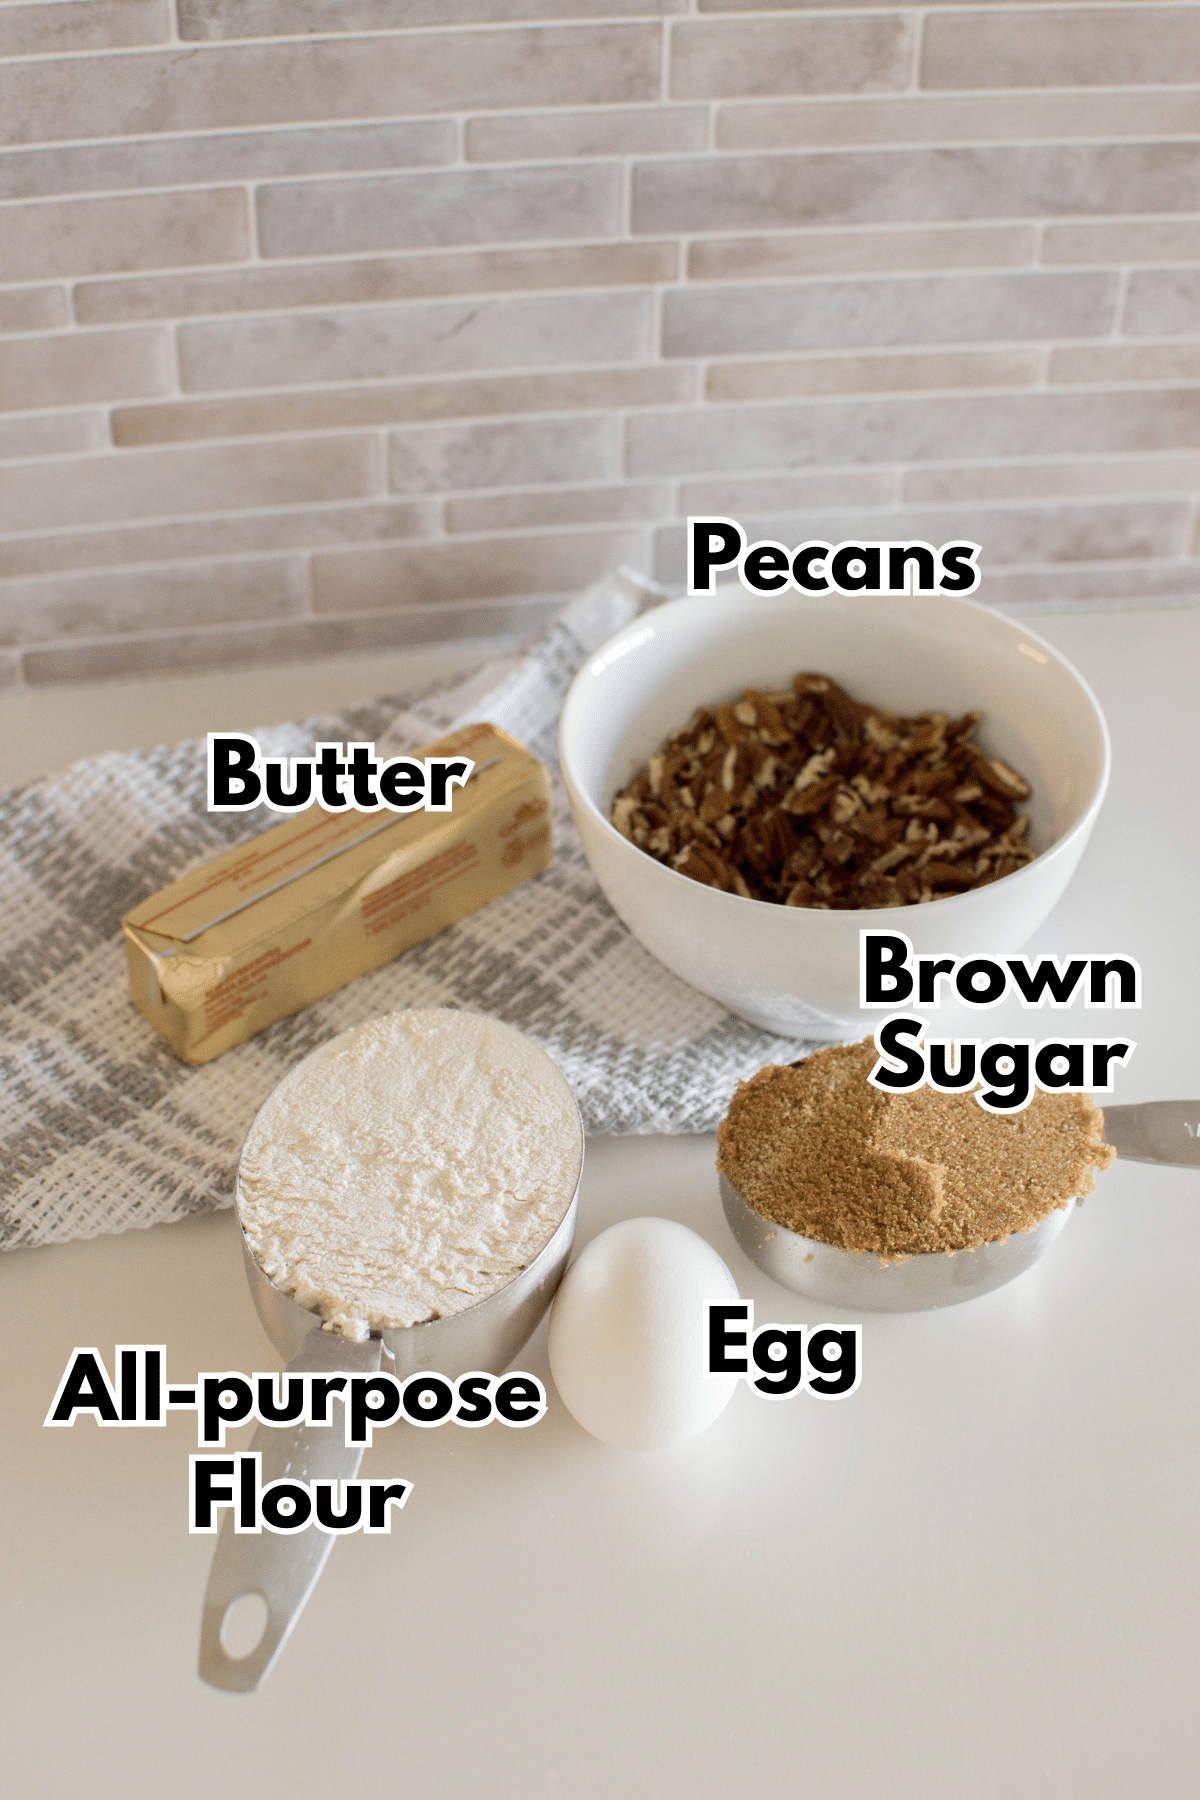 The ingredients for Brown Sugar Pecan Cookies.